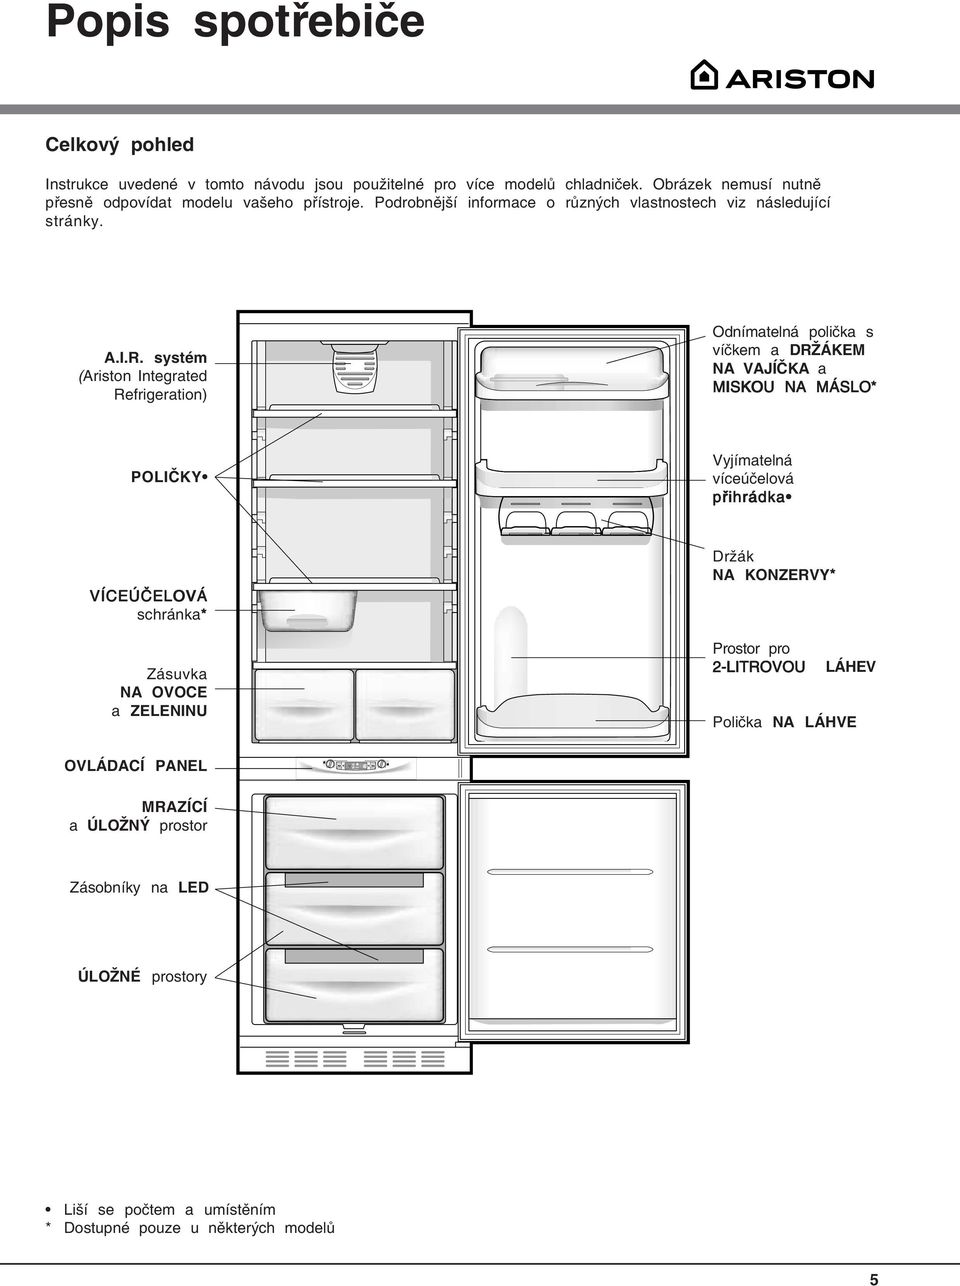 systém (Ariston Integrated Refrigeration) Odnímatelná polička s víčkem a DRŽÁKEM NA VAJÍČKA a MISKOU NA MÁSLO* POLIČKY Vyjímatelná víceúčelová přihrádka